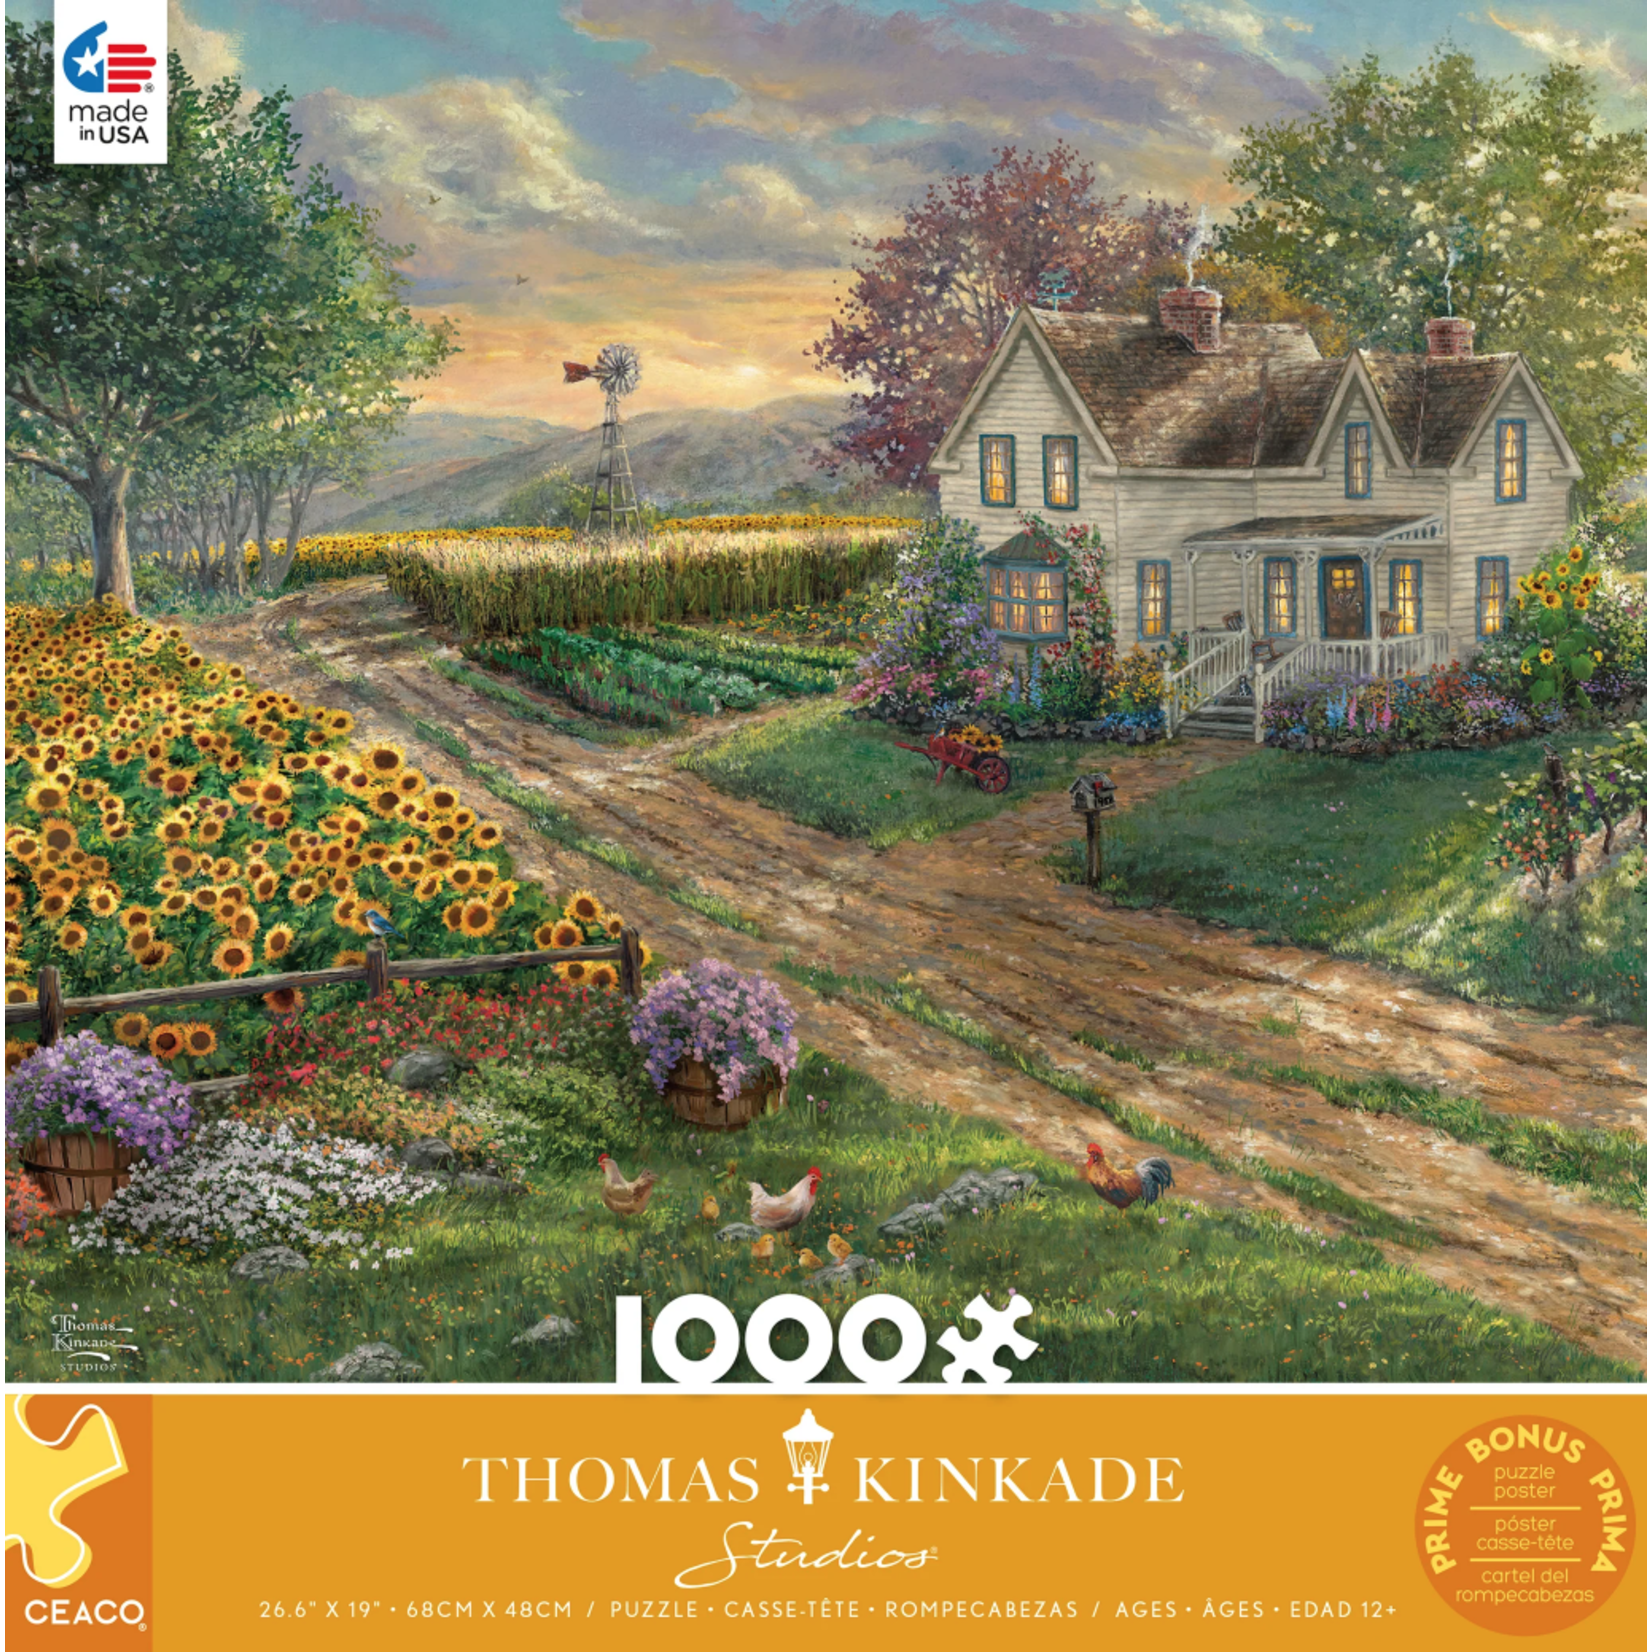 Ceaco Sunflower Fields by Thomas Kinkade, 1000-Piece Jigsaw Puzzle